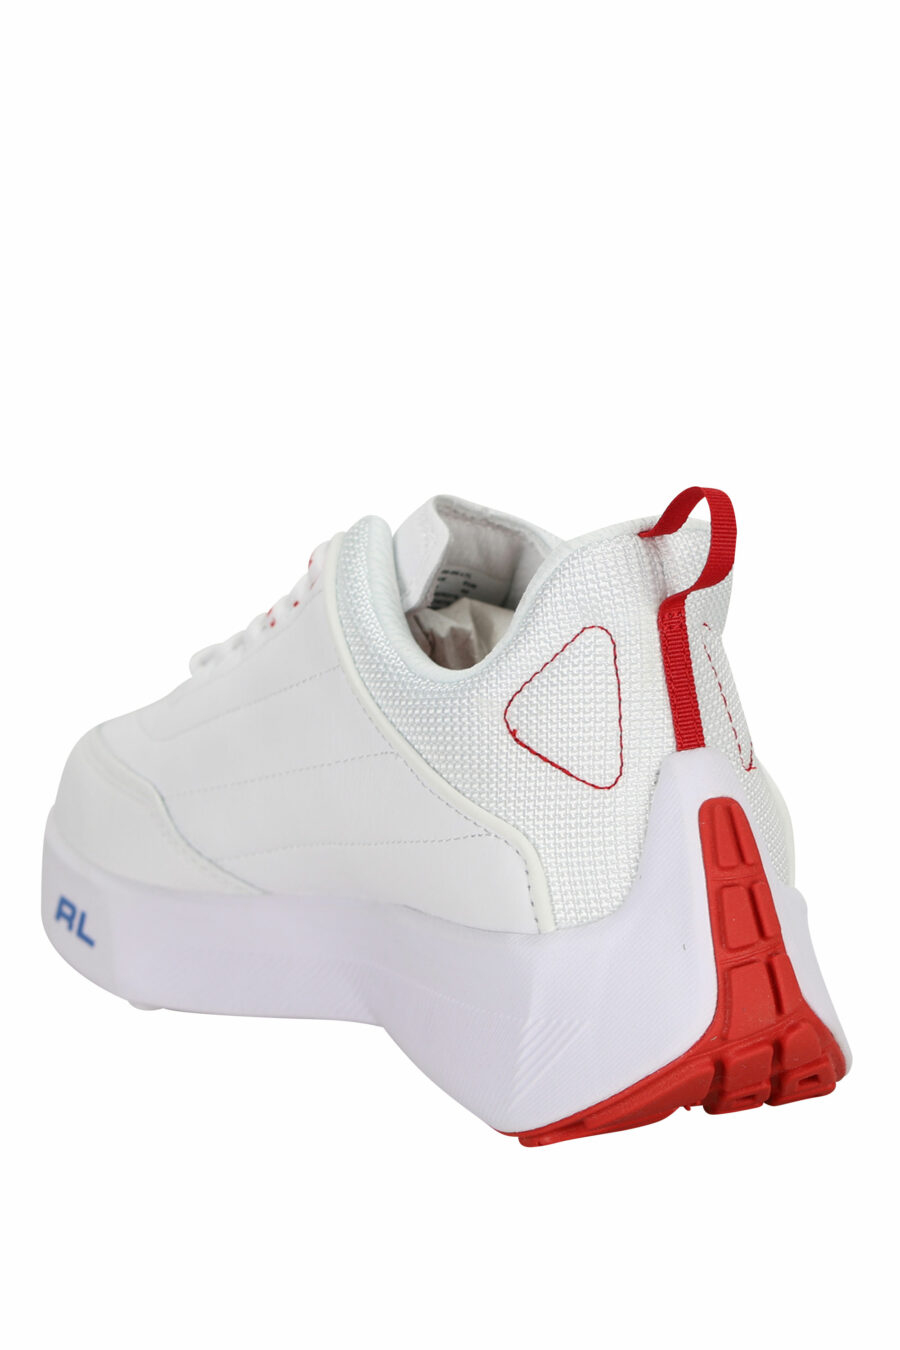 Zapatillas blancas con minilogo y detalles rojos - 3616535649279 3